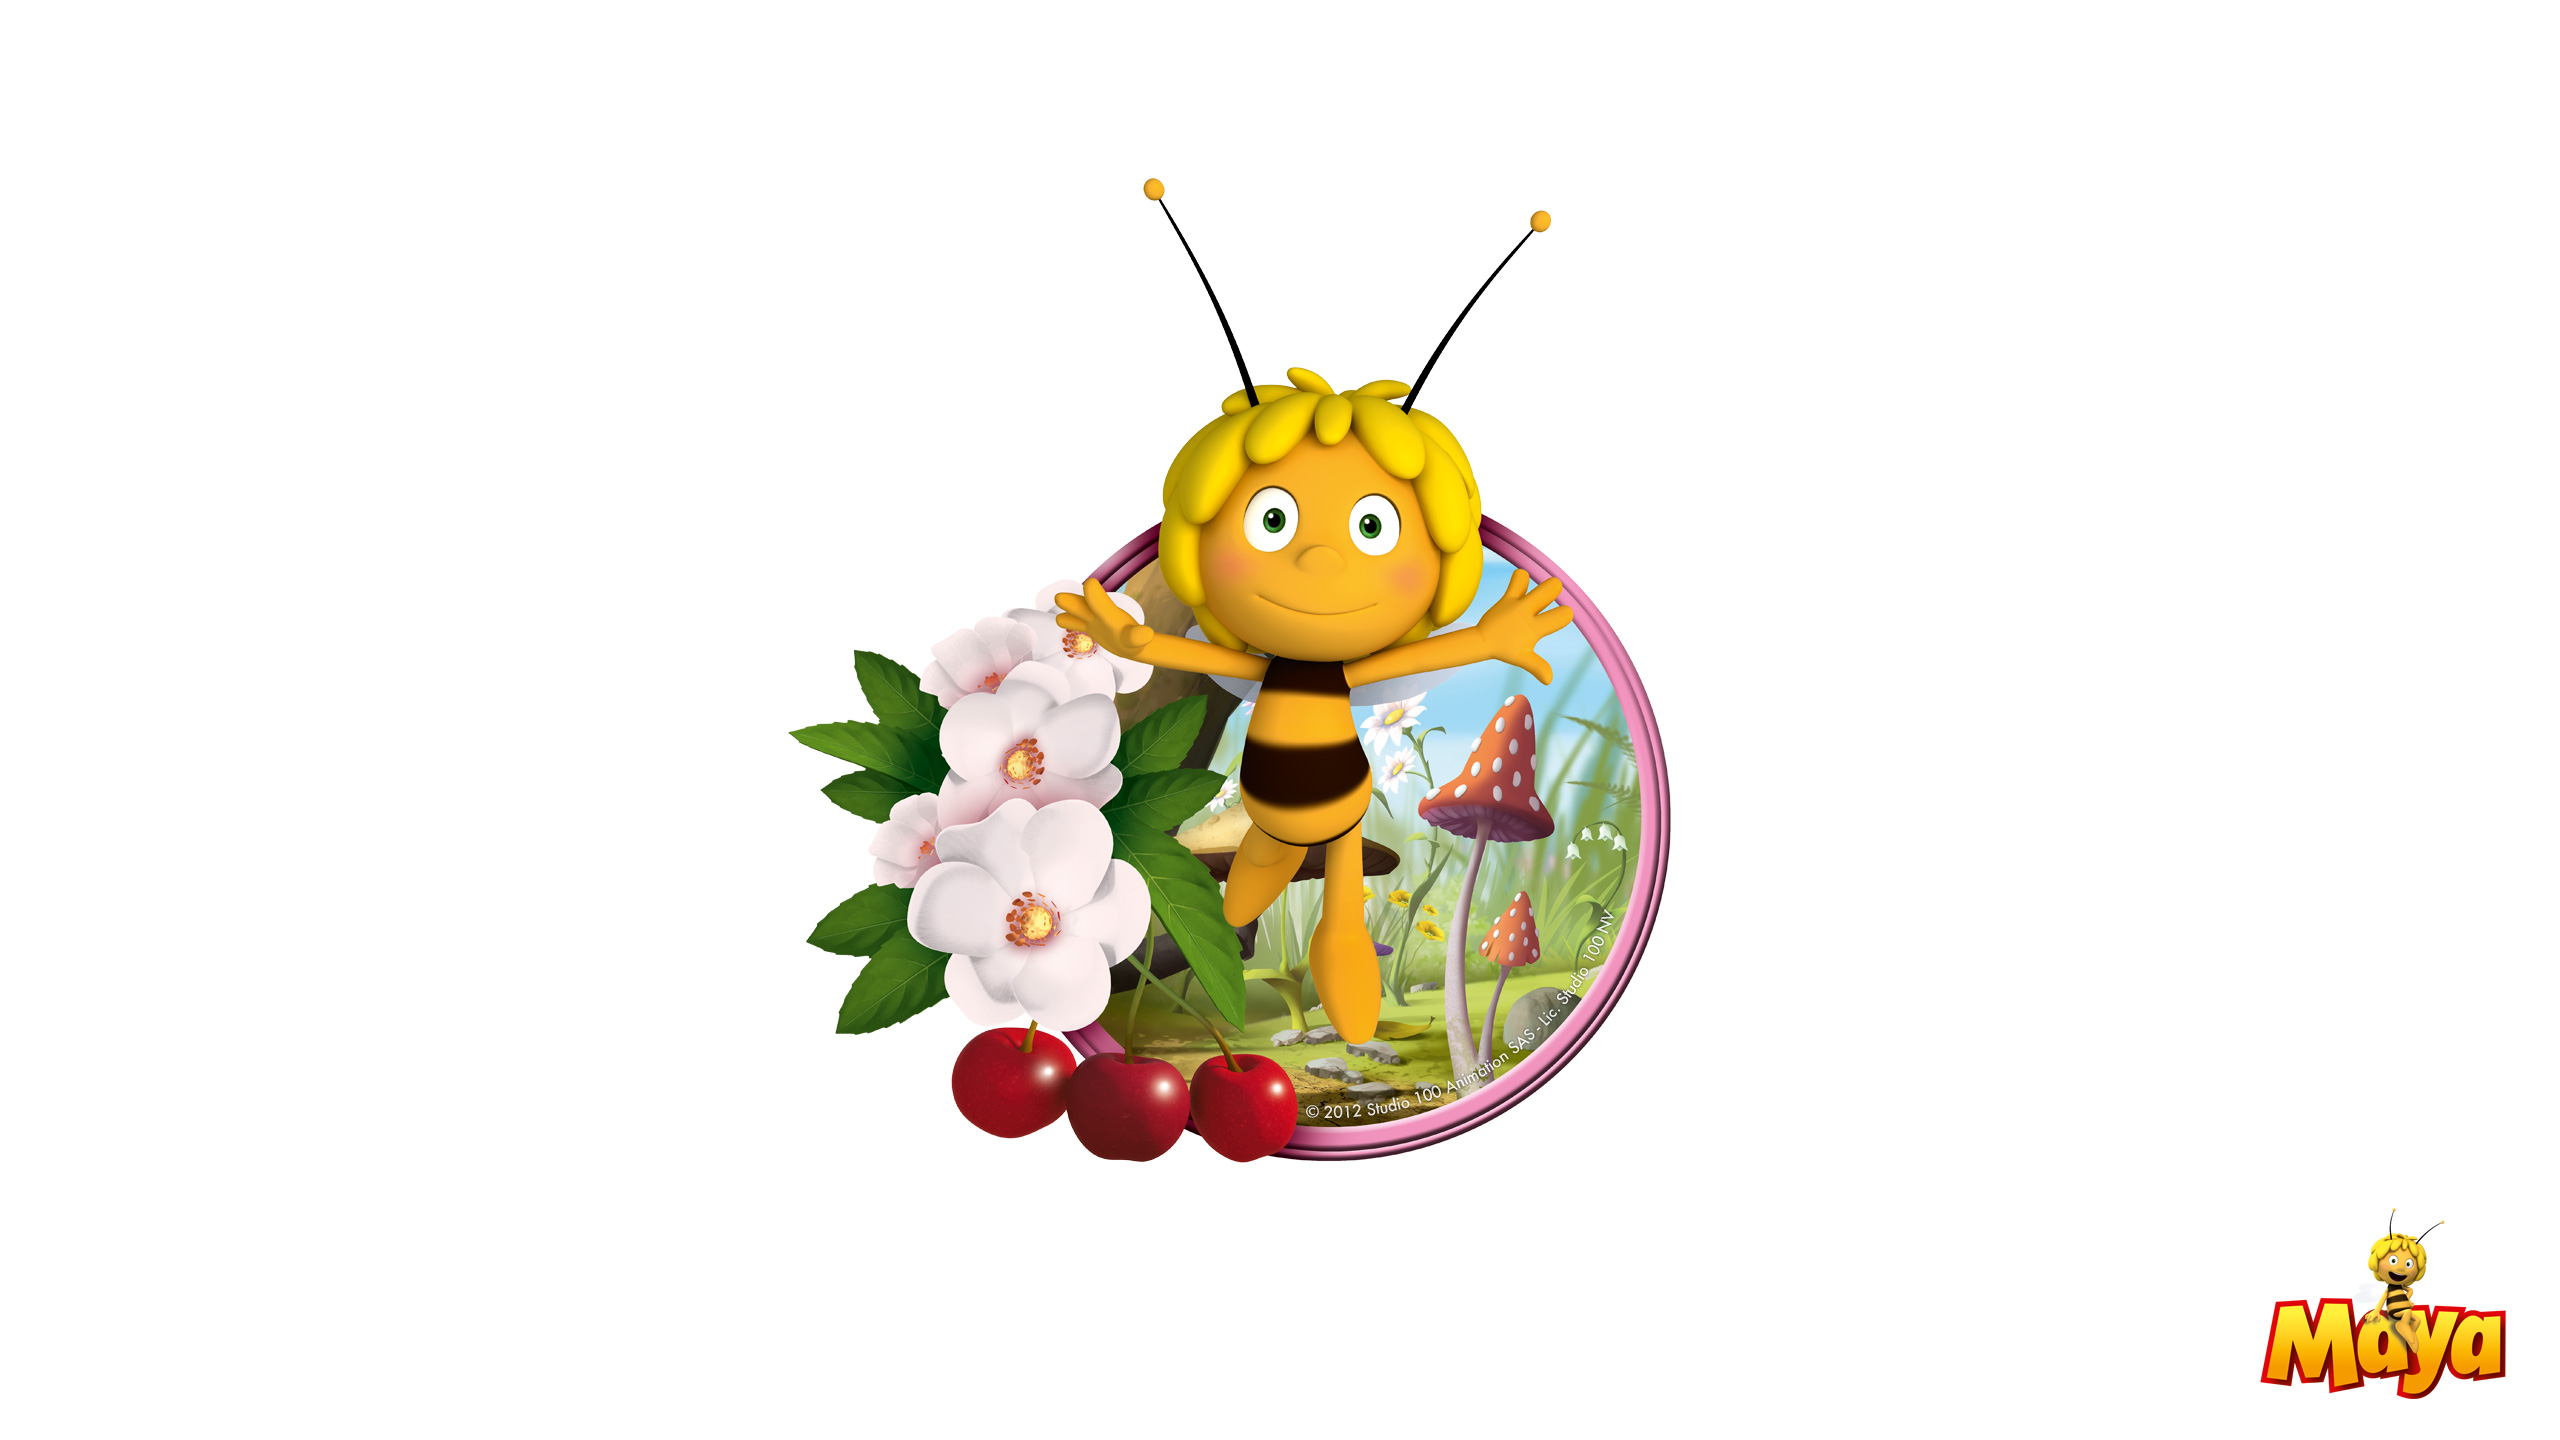 마야 이름 바탕 화면,만화,곤충,꿀벌,벌,막 날개 곤충